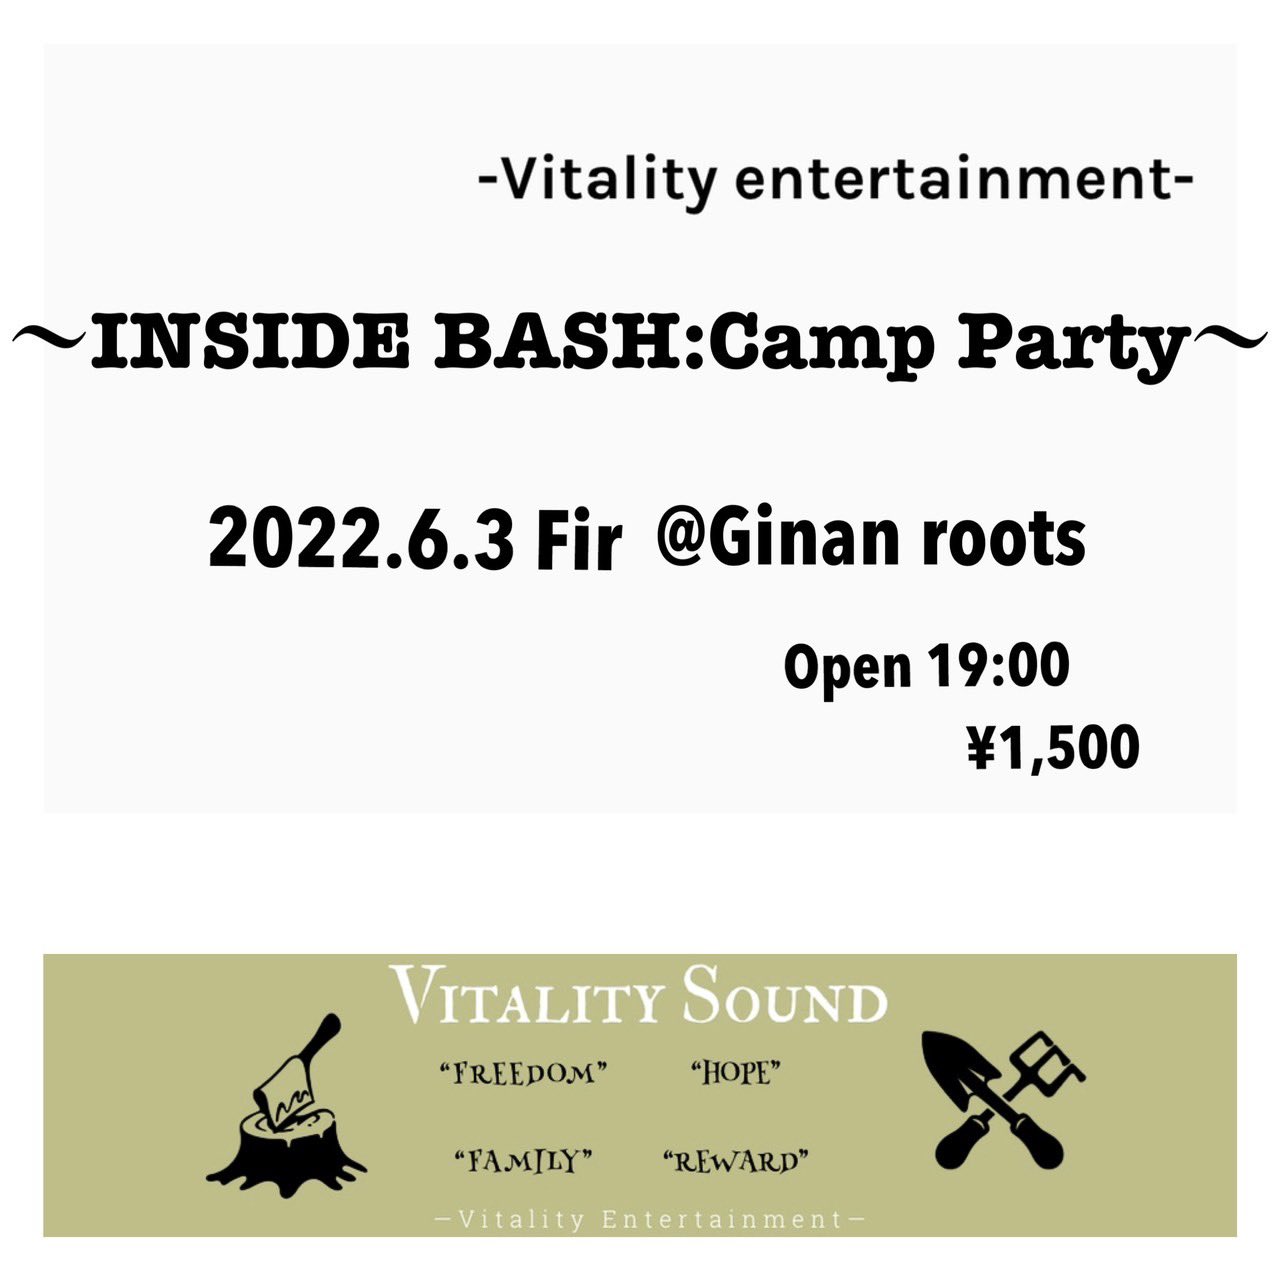 岐阜club Roots 6 3 金 岐阜club Roots Vitality Ent Presents Inside Bash Campparty Open Start19 00 前売 1 500 1ドリンク シーシャ付き T Co Oyf8c1q4v4 Twitter